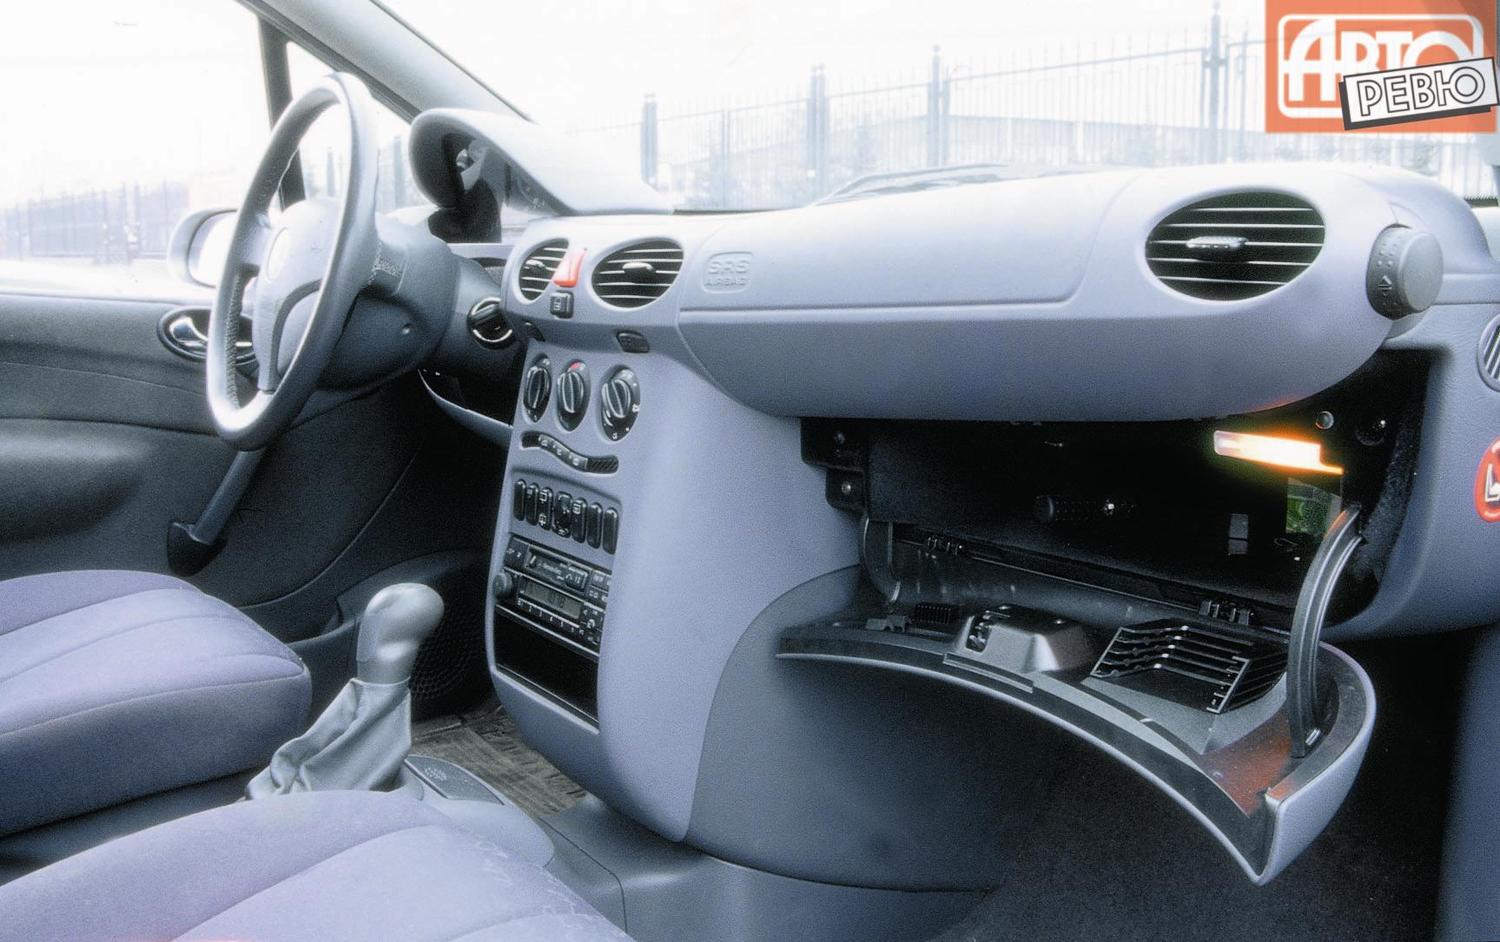 хэтчбек 5 дв. Mercedes-Benz A-klasse 1997 - 2001г выпуска модификация 1.4 AT (82 л.с.)